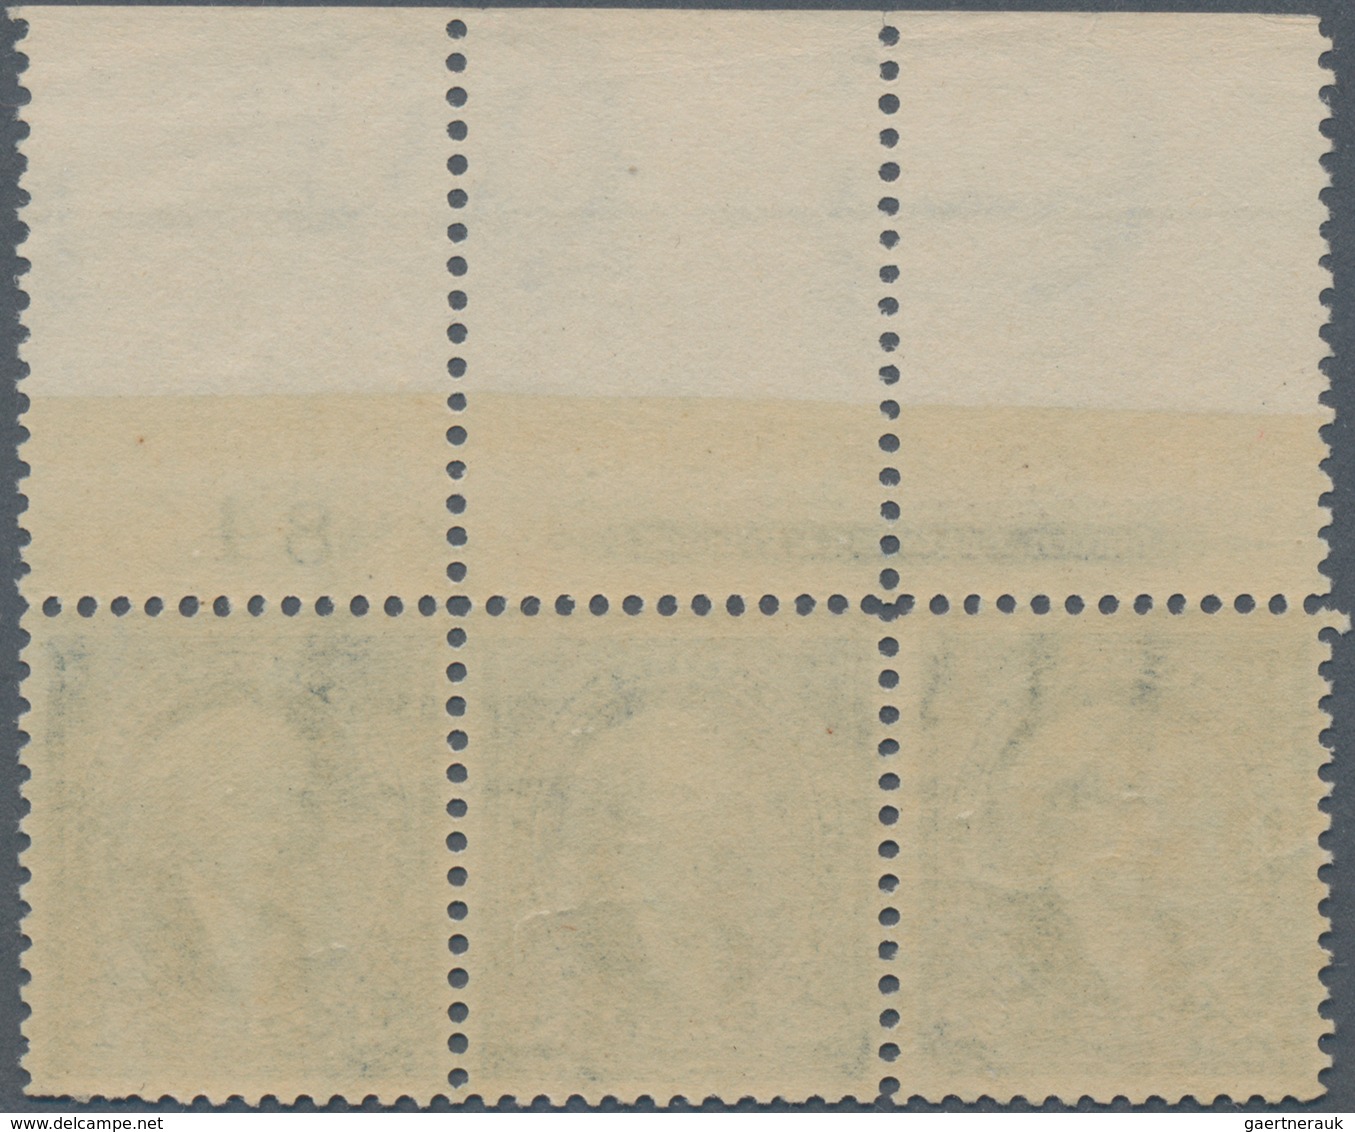 Vereinigte Staaten Von Amerika: $2.00 1895 Watermarked (Scott 277), Mint Full Top Plate No. 84 And I - Gebruikt